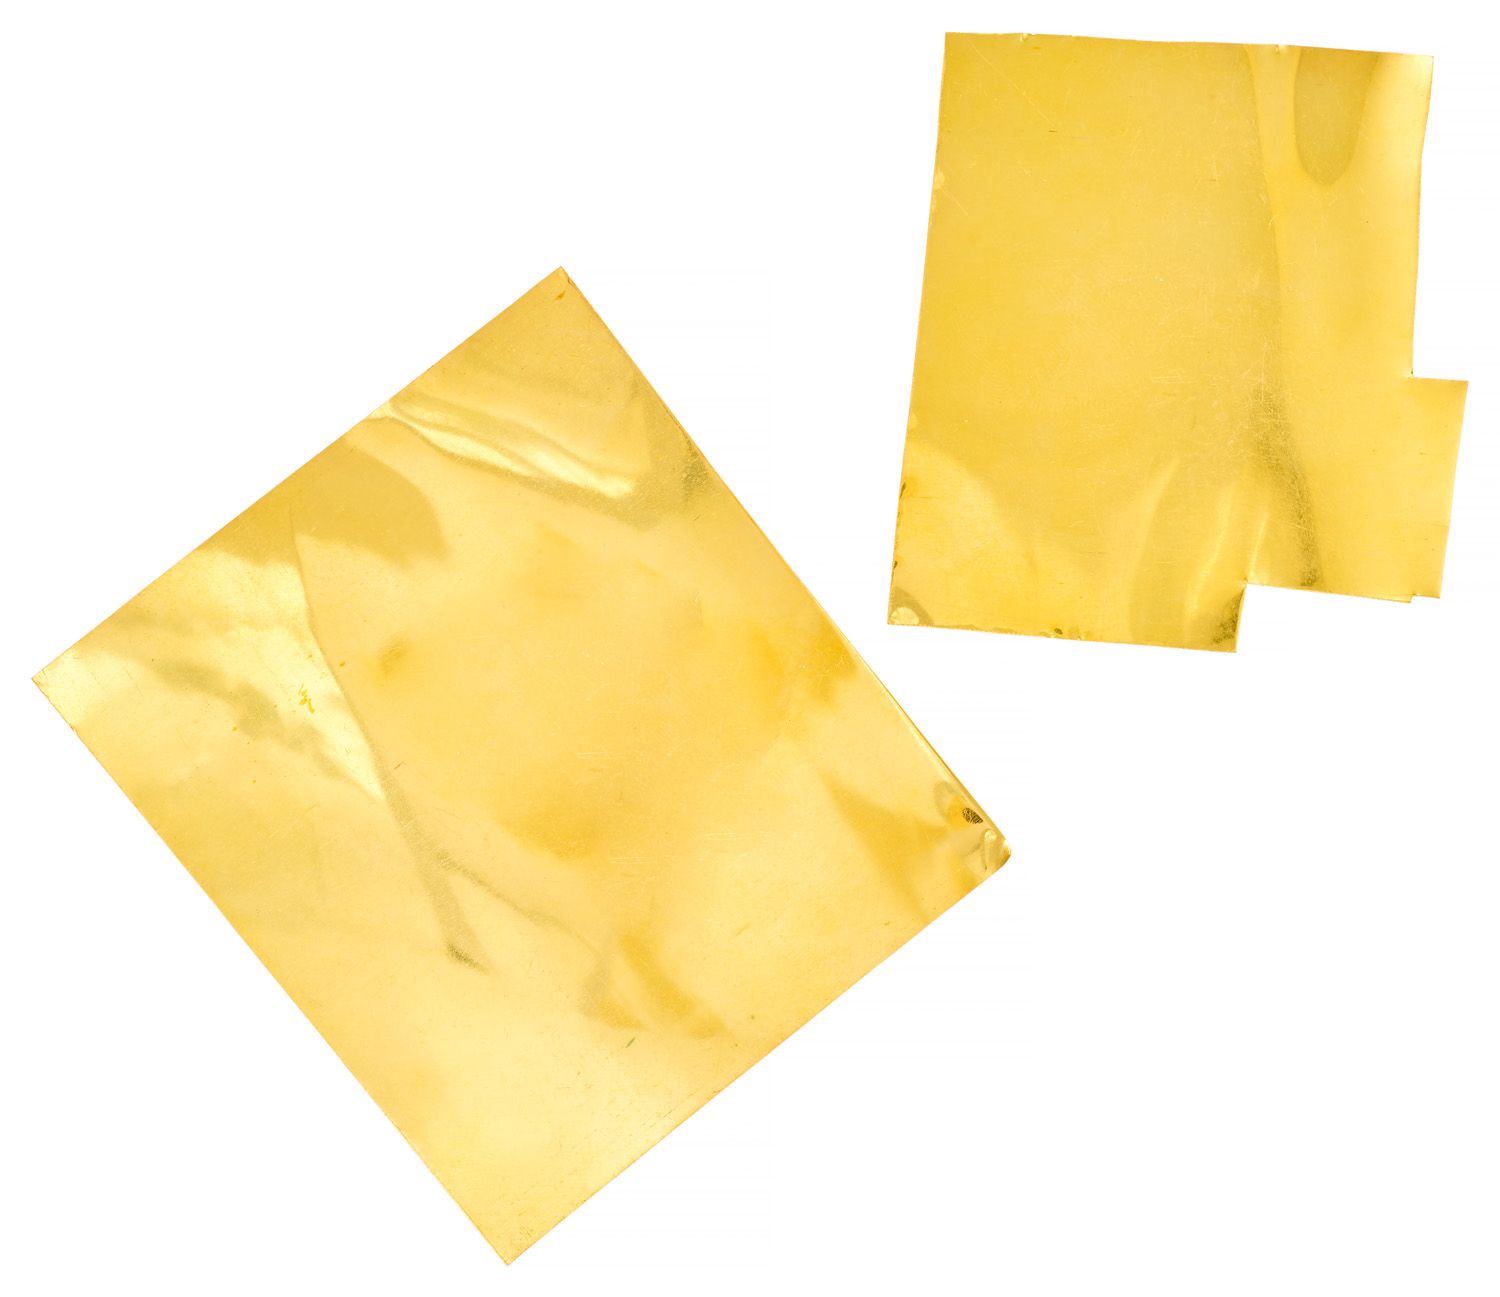 Plaques de soudure in oro giallo 

Uno del peso di 24,33 g e l'altro di 38,25 g &hellip;